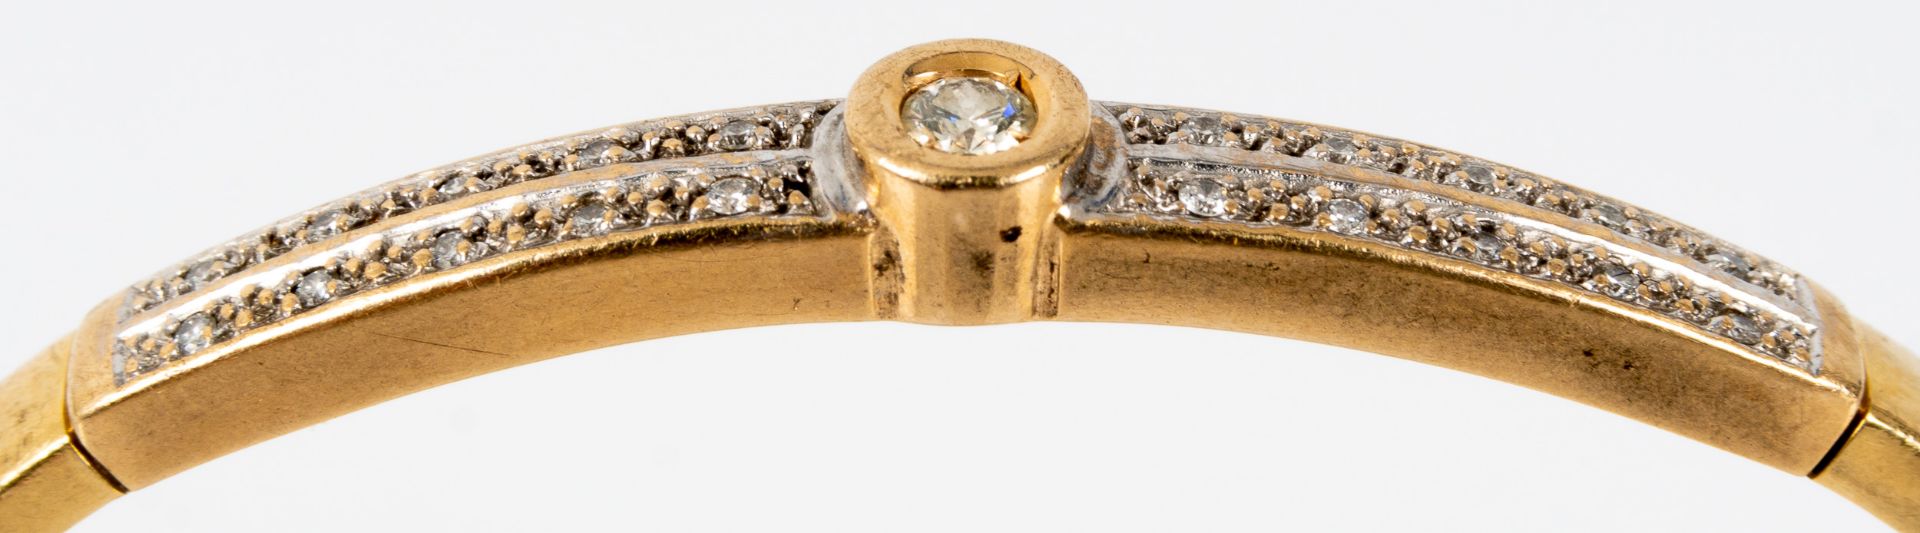 Armreif, 585er Gelbgold, hohle Fassung. Oberseitig 21 winzige Diamanten in Zweierreihen, mittig 1 r - Bild 8 aus 9